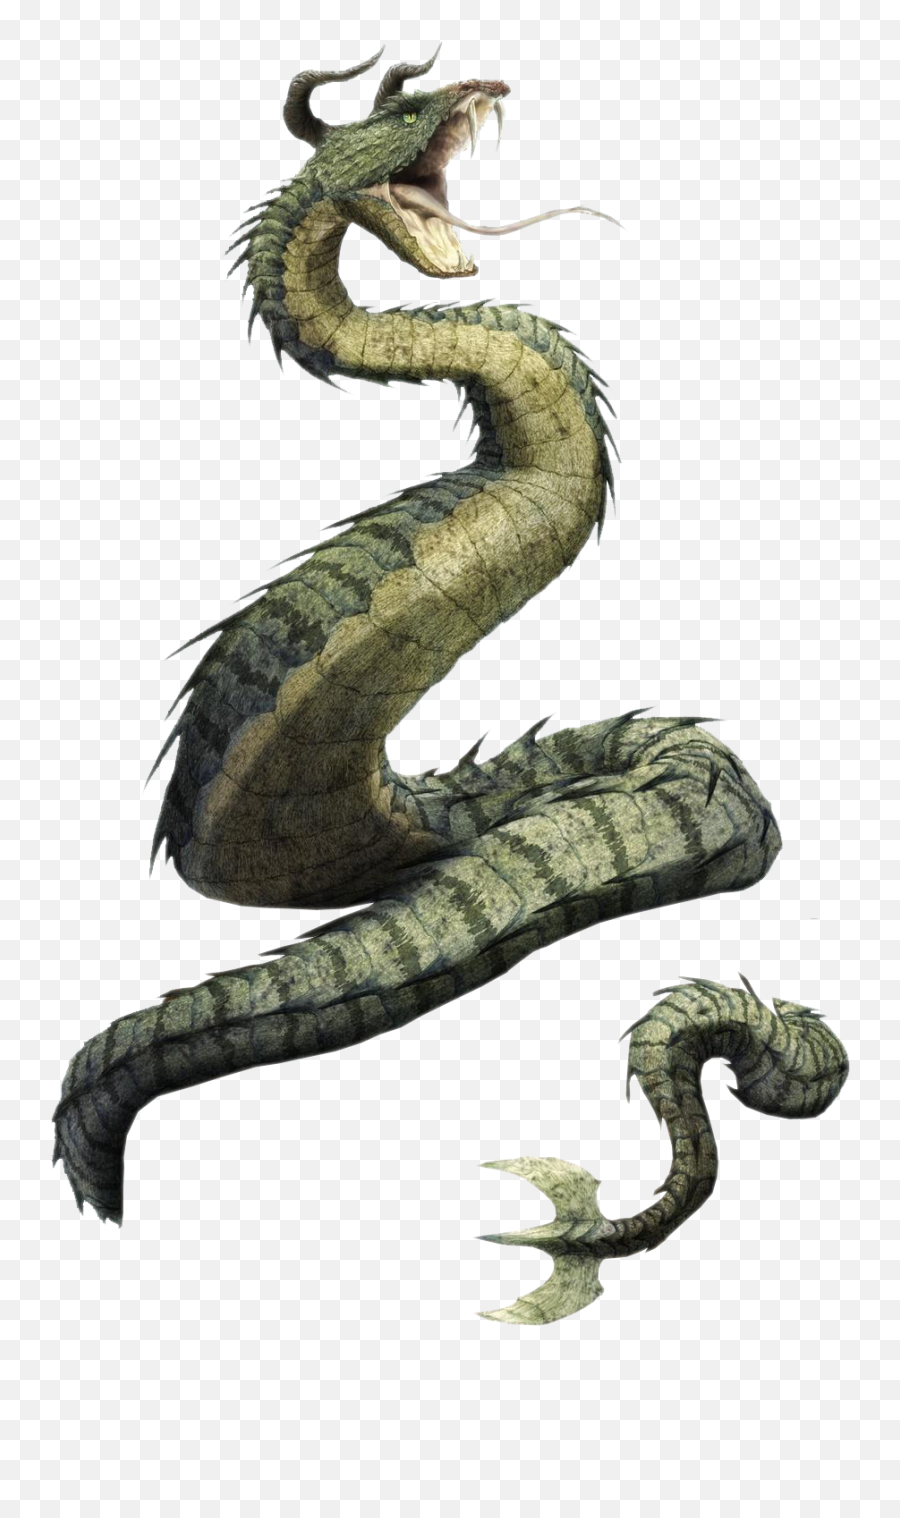 Serpent Png U0026 Free Serpentpng Transparent Images 30954 - Pngio Mythology Cerastes Emoji,Southside Serpents Logo